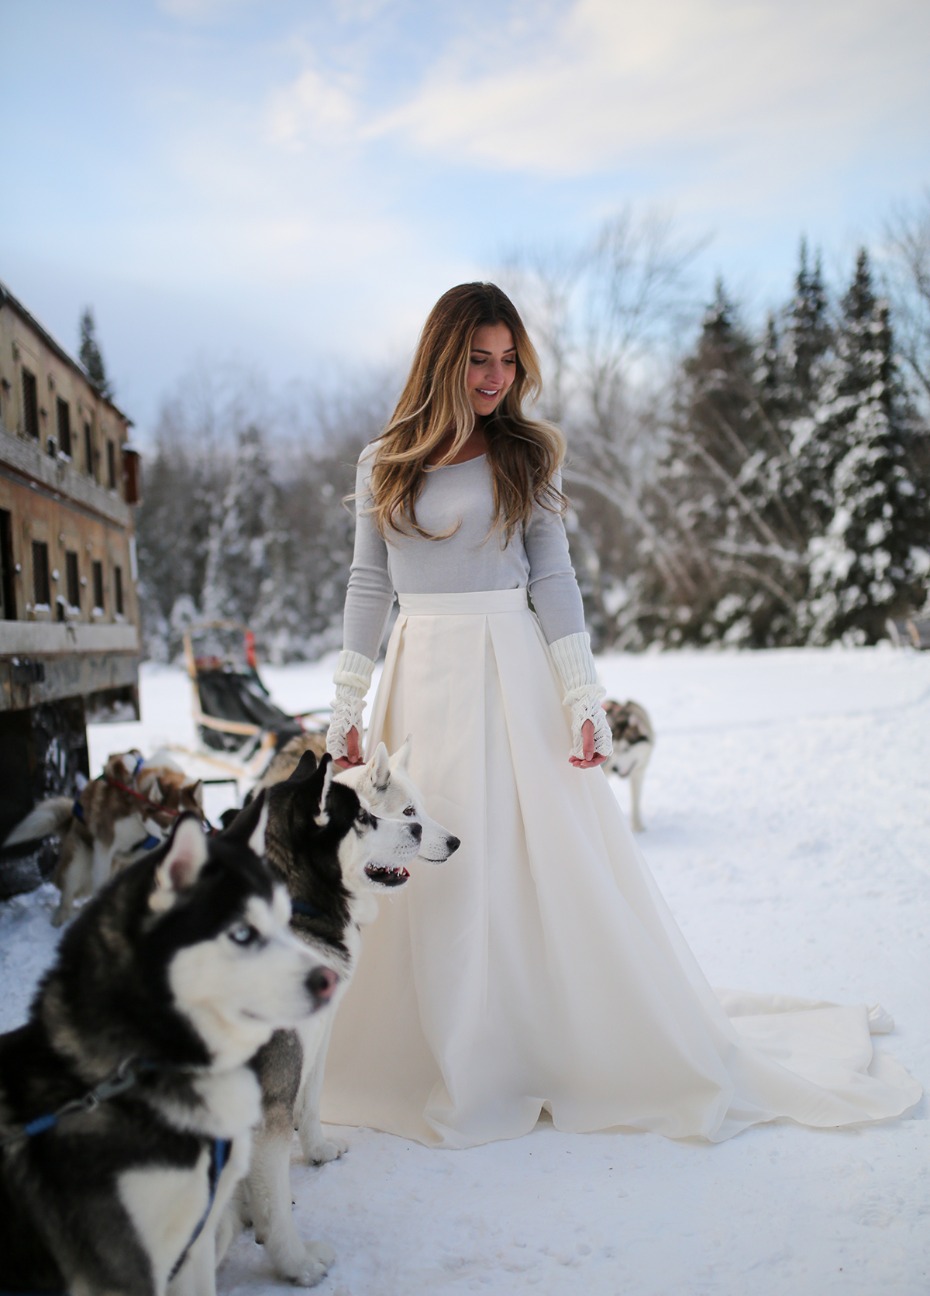 winter wedding ideas plus a dog sled team